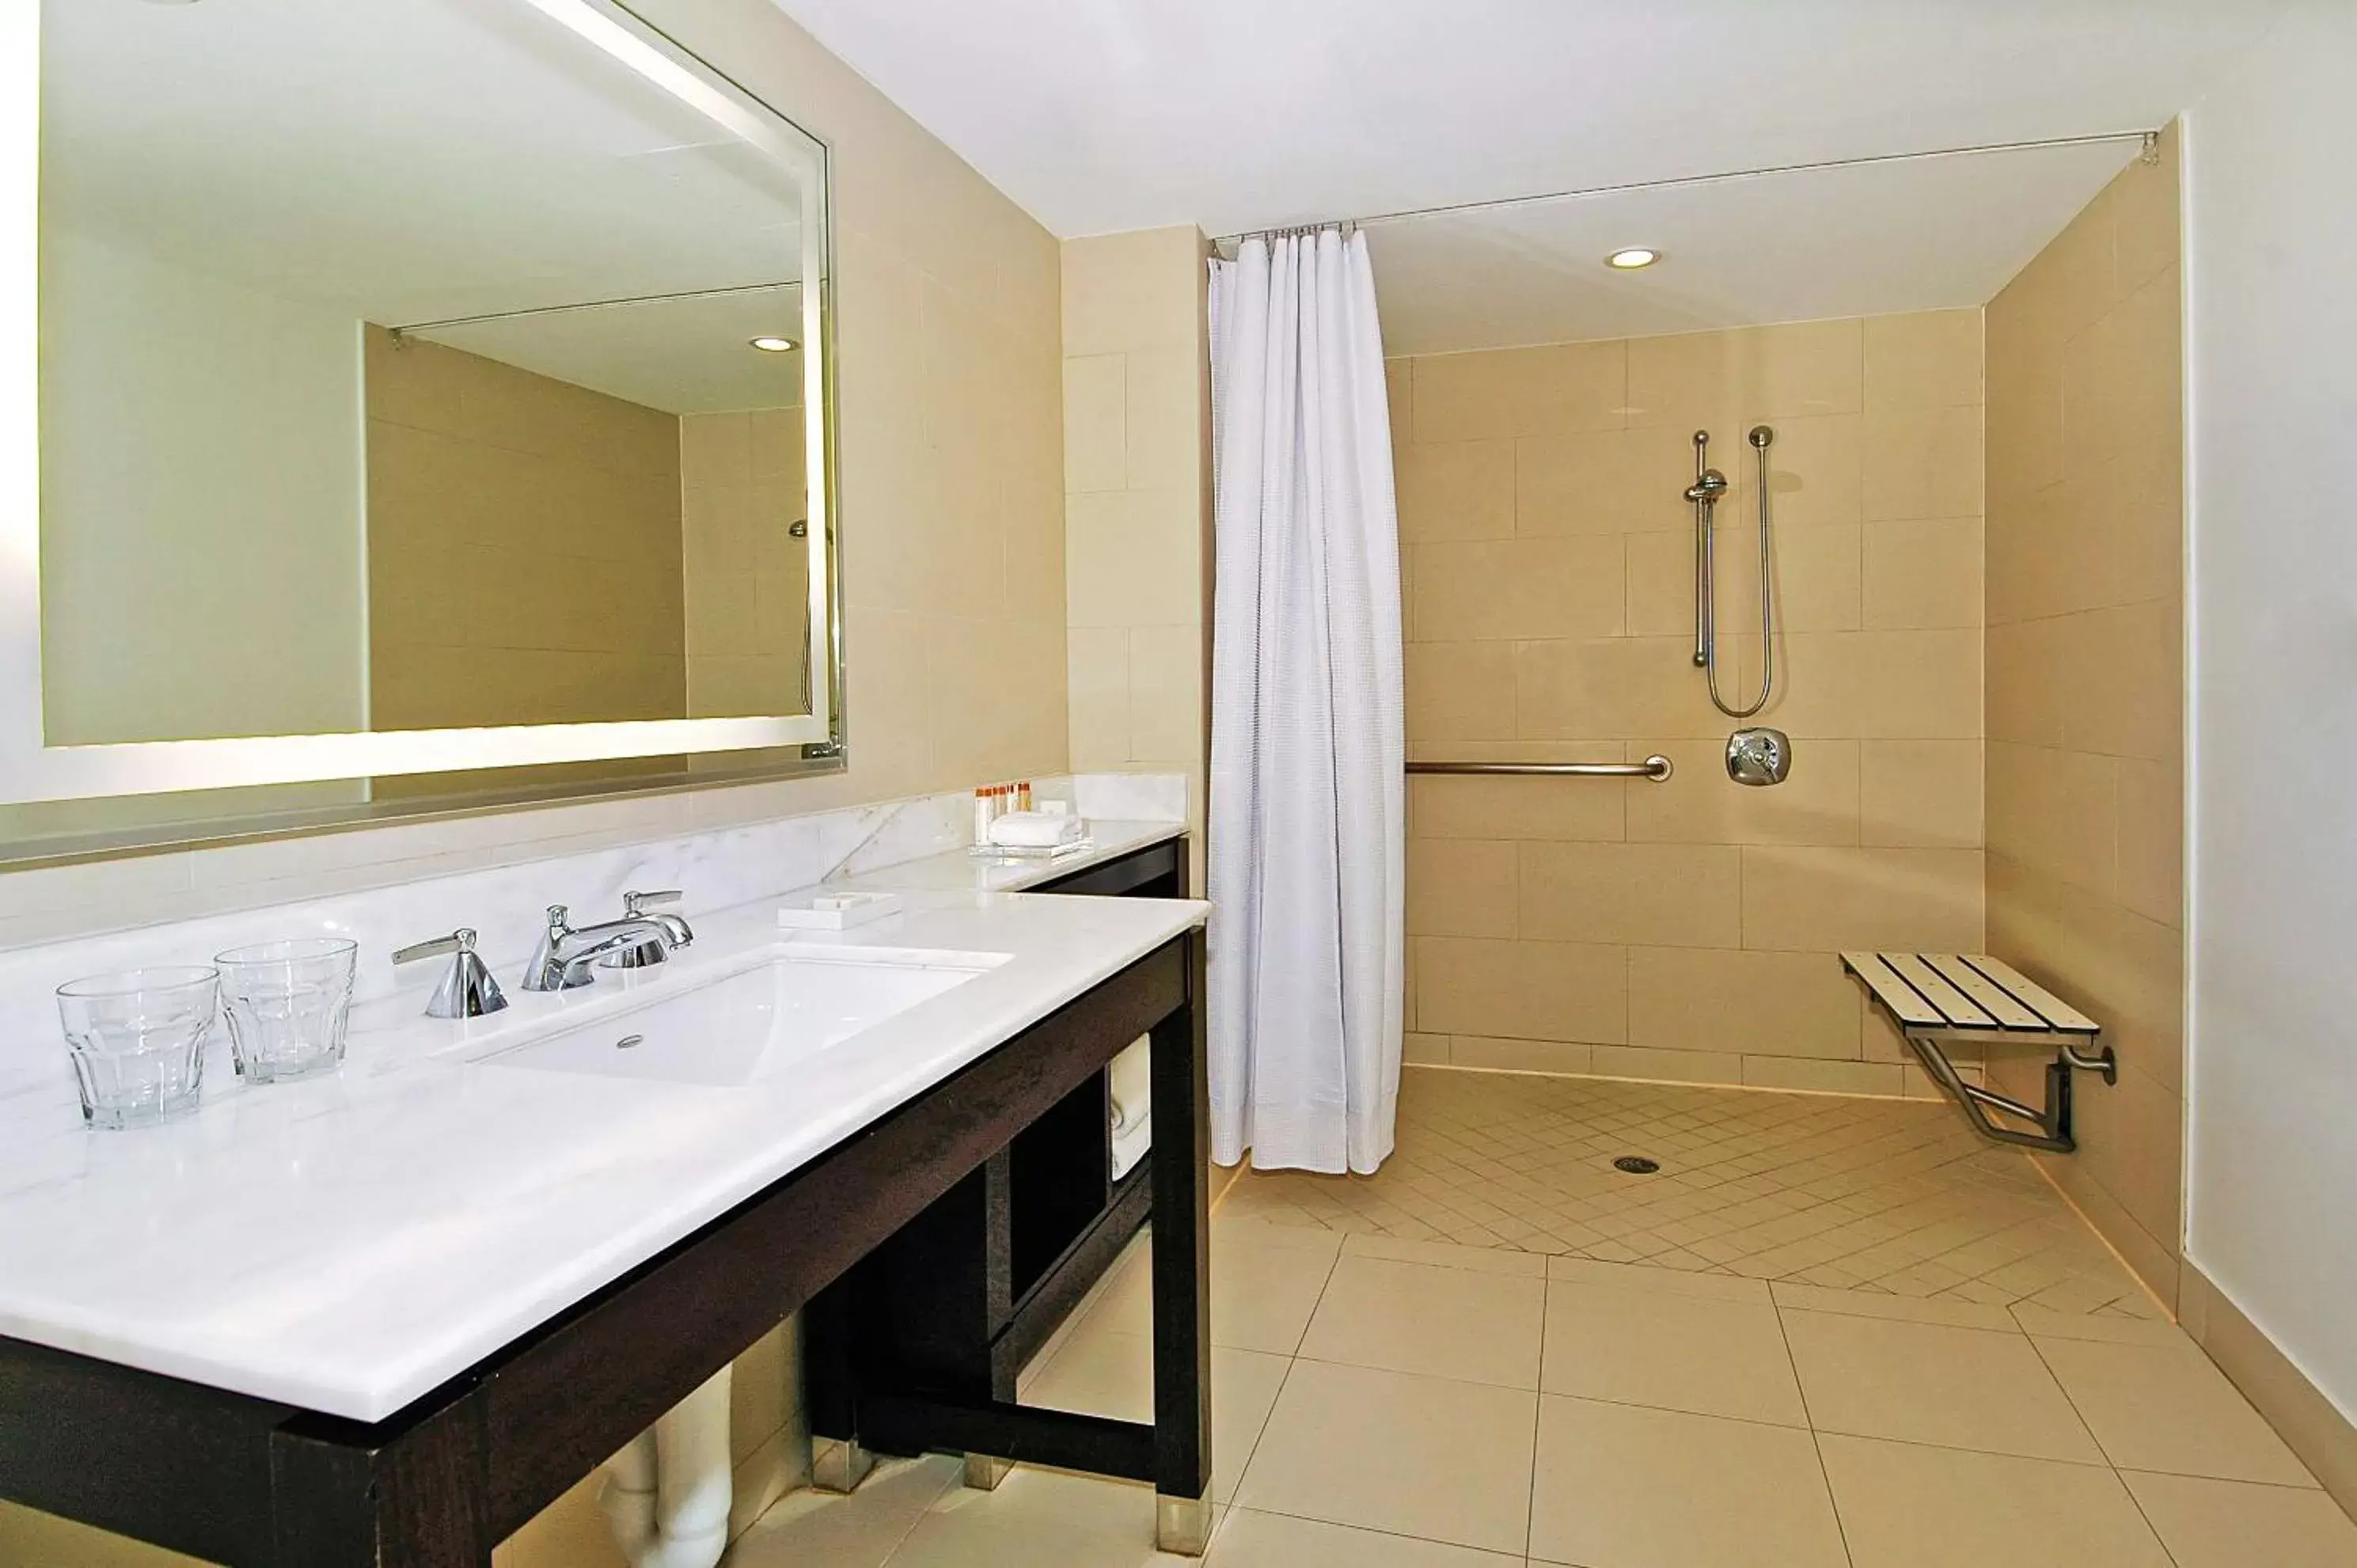 Bathroom in The Condado Plaza Hilton